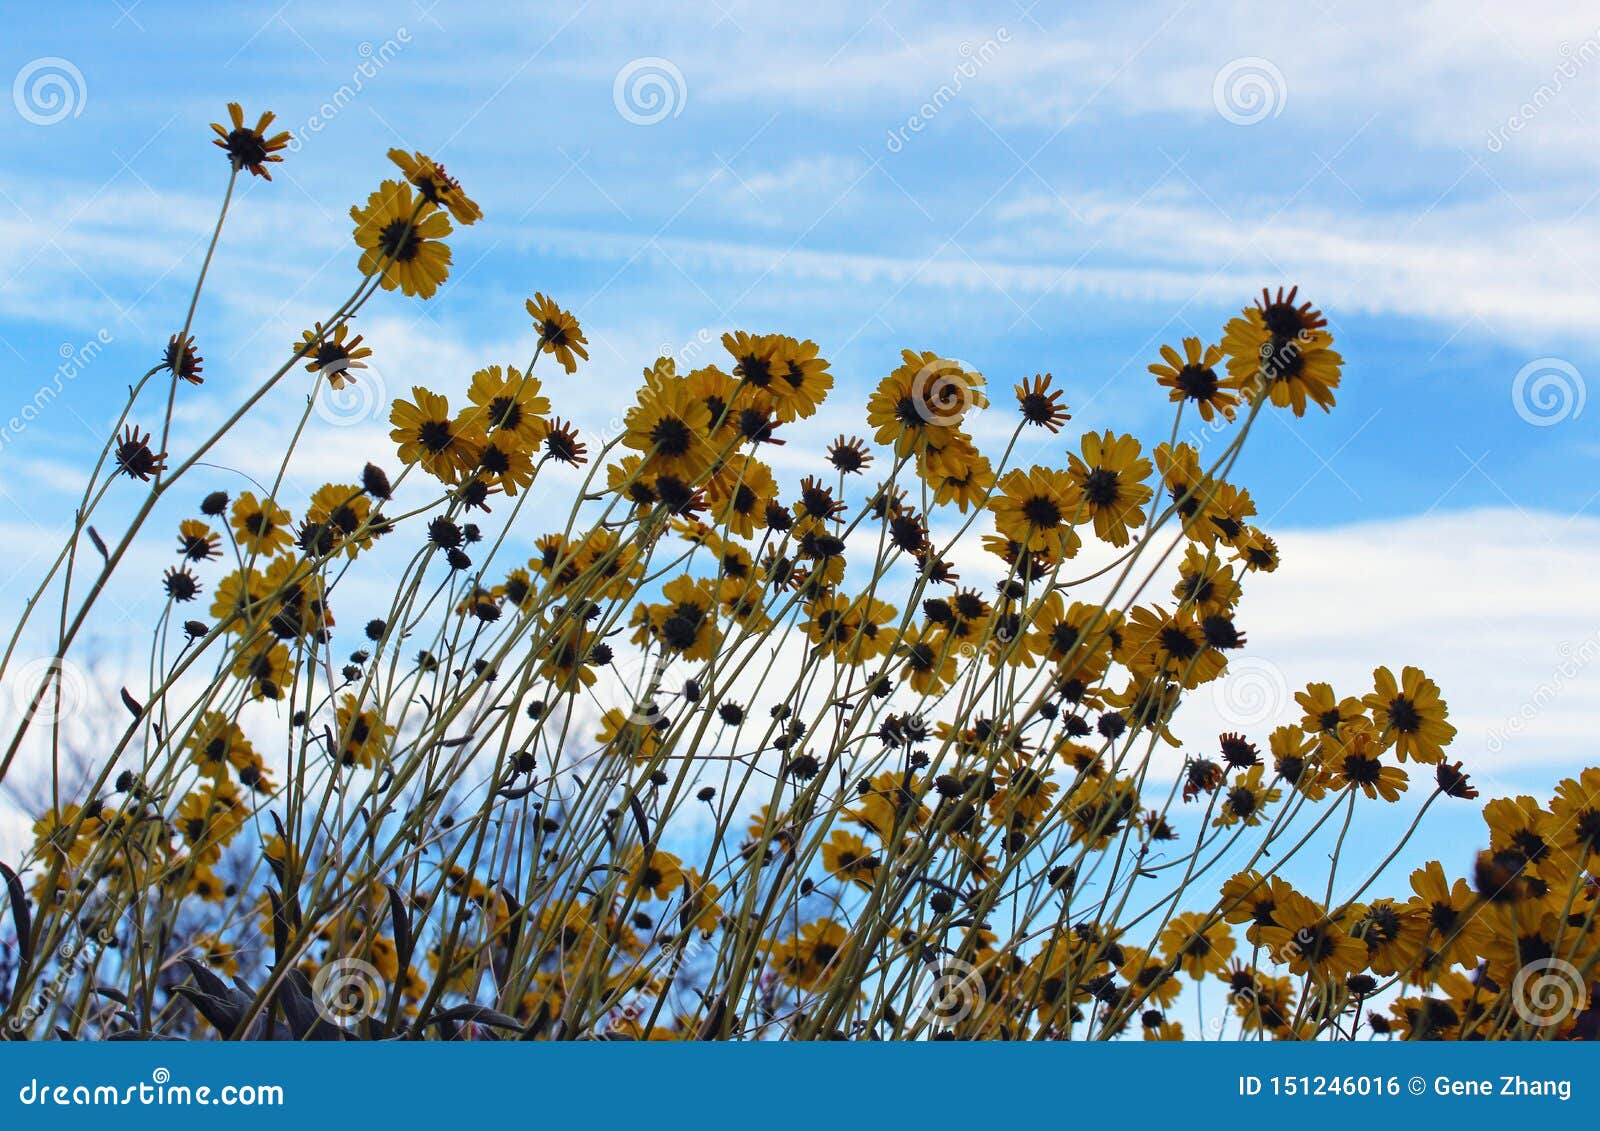 brittlebush uner blue sky,  anza borrego desert state park